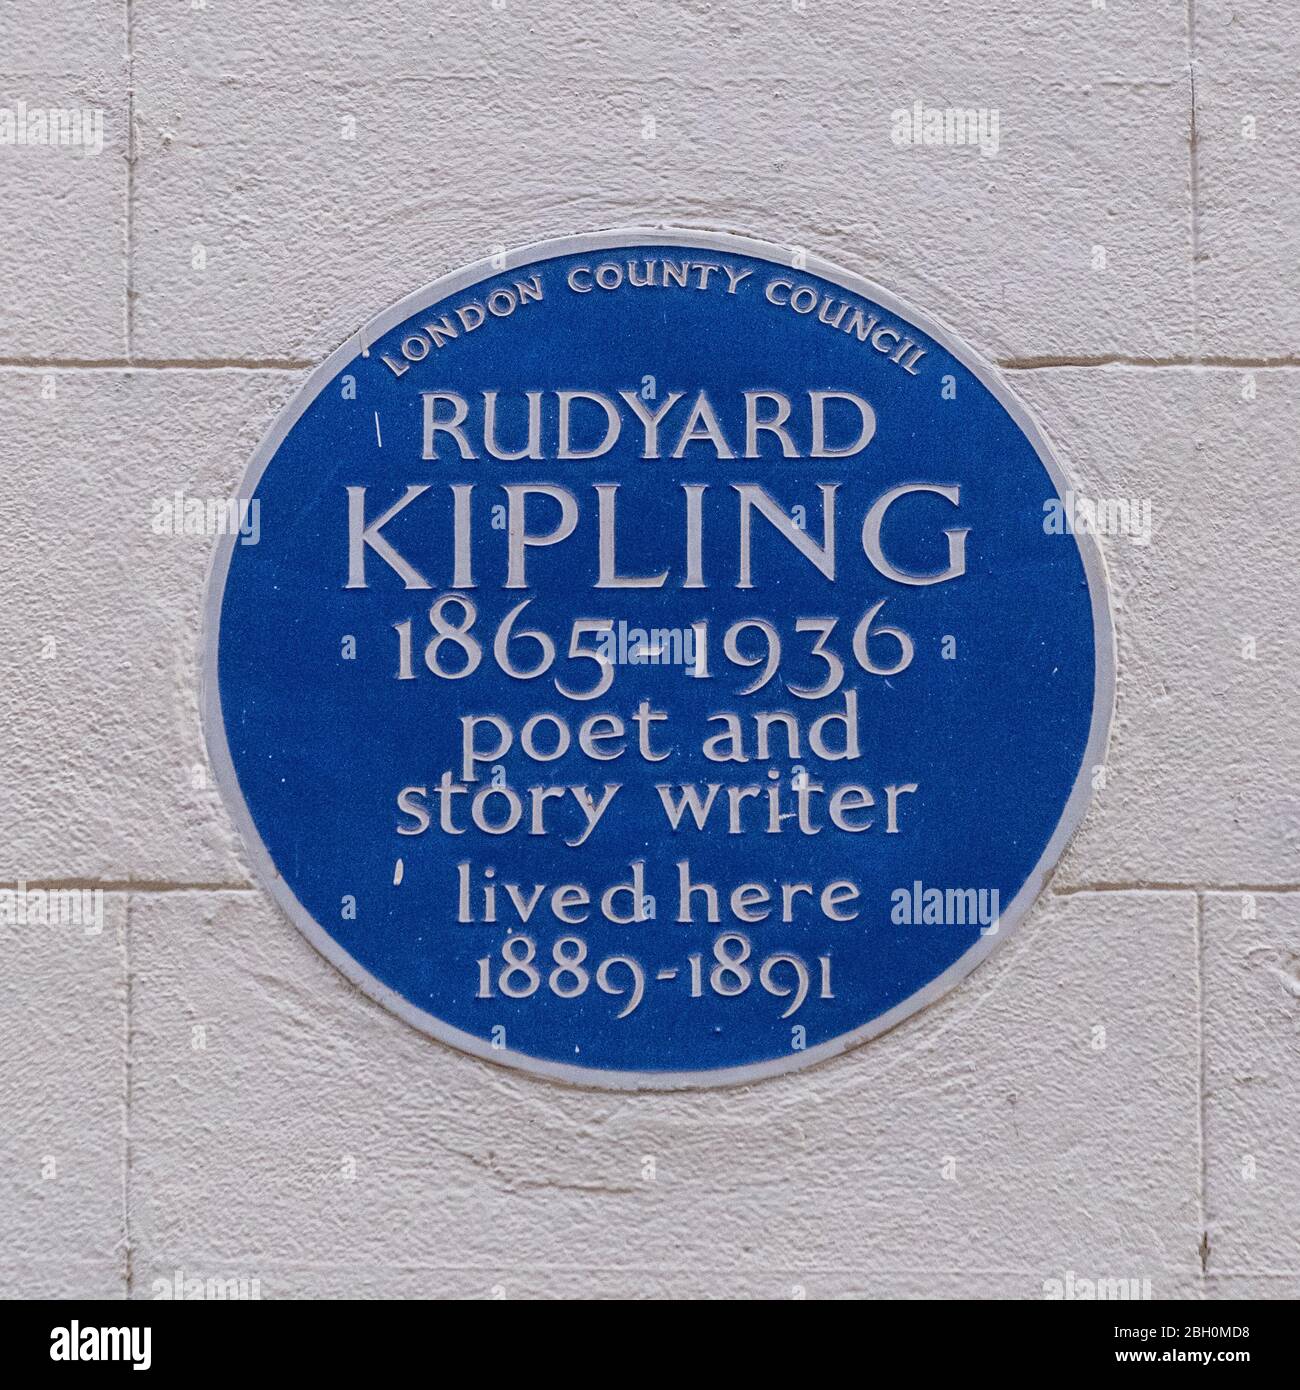 RUDYARD KIPLING 1865-1936 Dichter und Erzähler, 1957 vom Londoner County Council in der Villiers Street 43, Charing Cross, London, WC2N 6N, errichtete Tafel Stockfoto